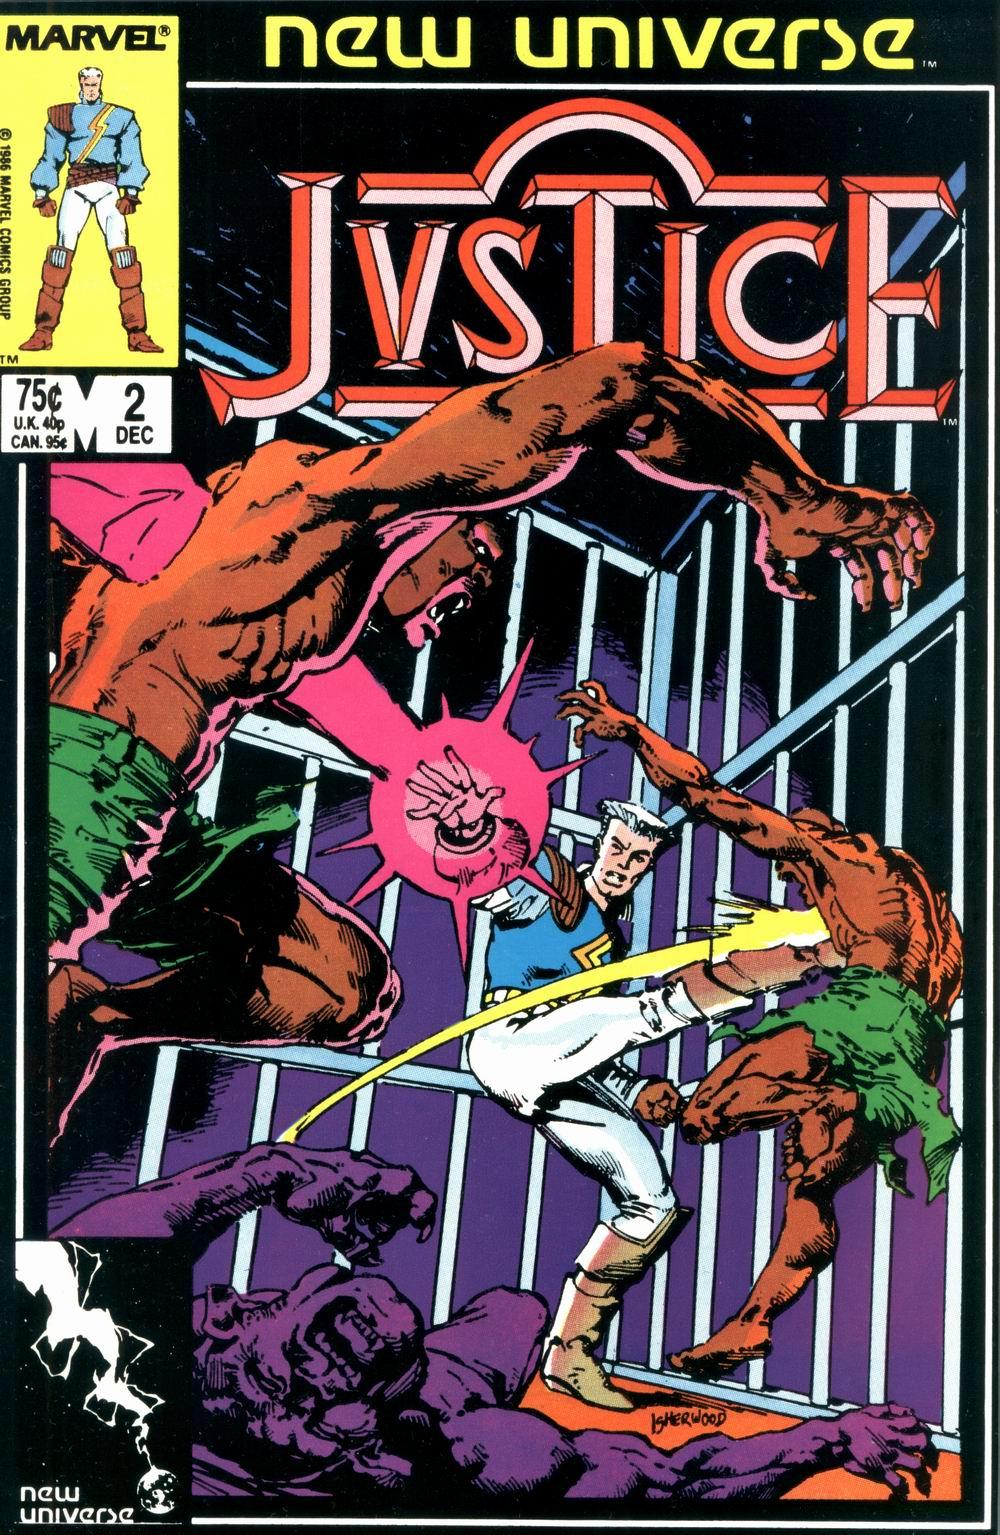 Justice Vol. 2 #2